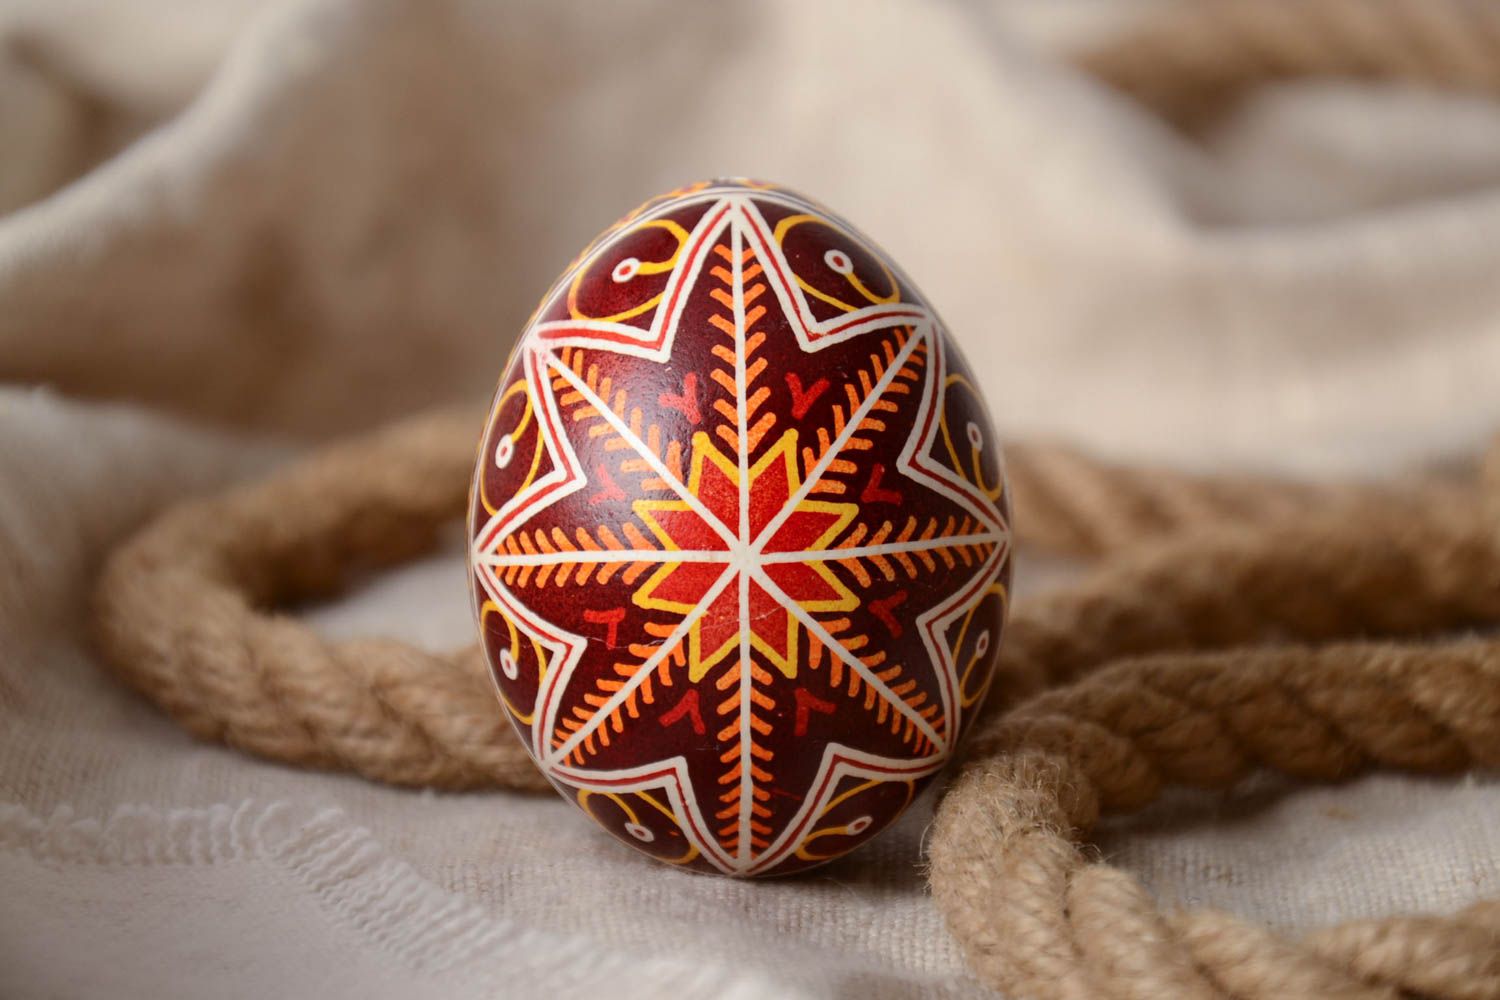 Пасхальное яйцо ручной работы красивое яркое нарядное в восковой технике фото 1